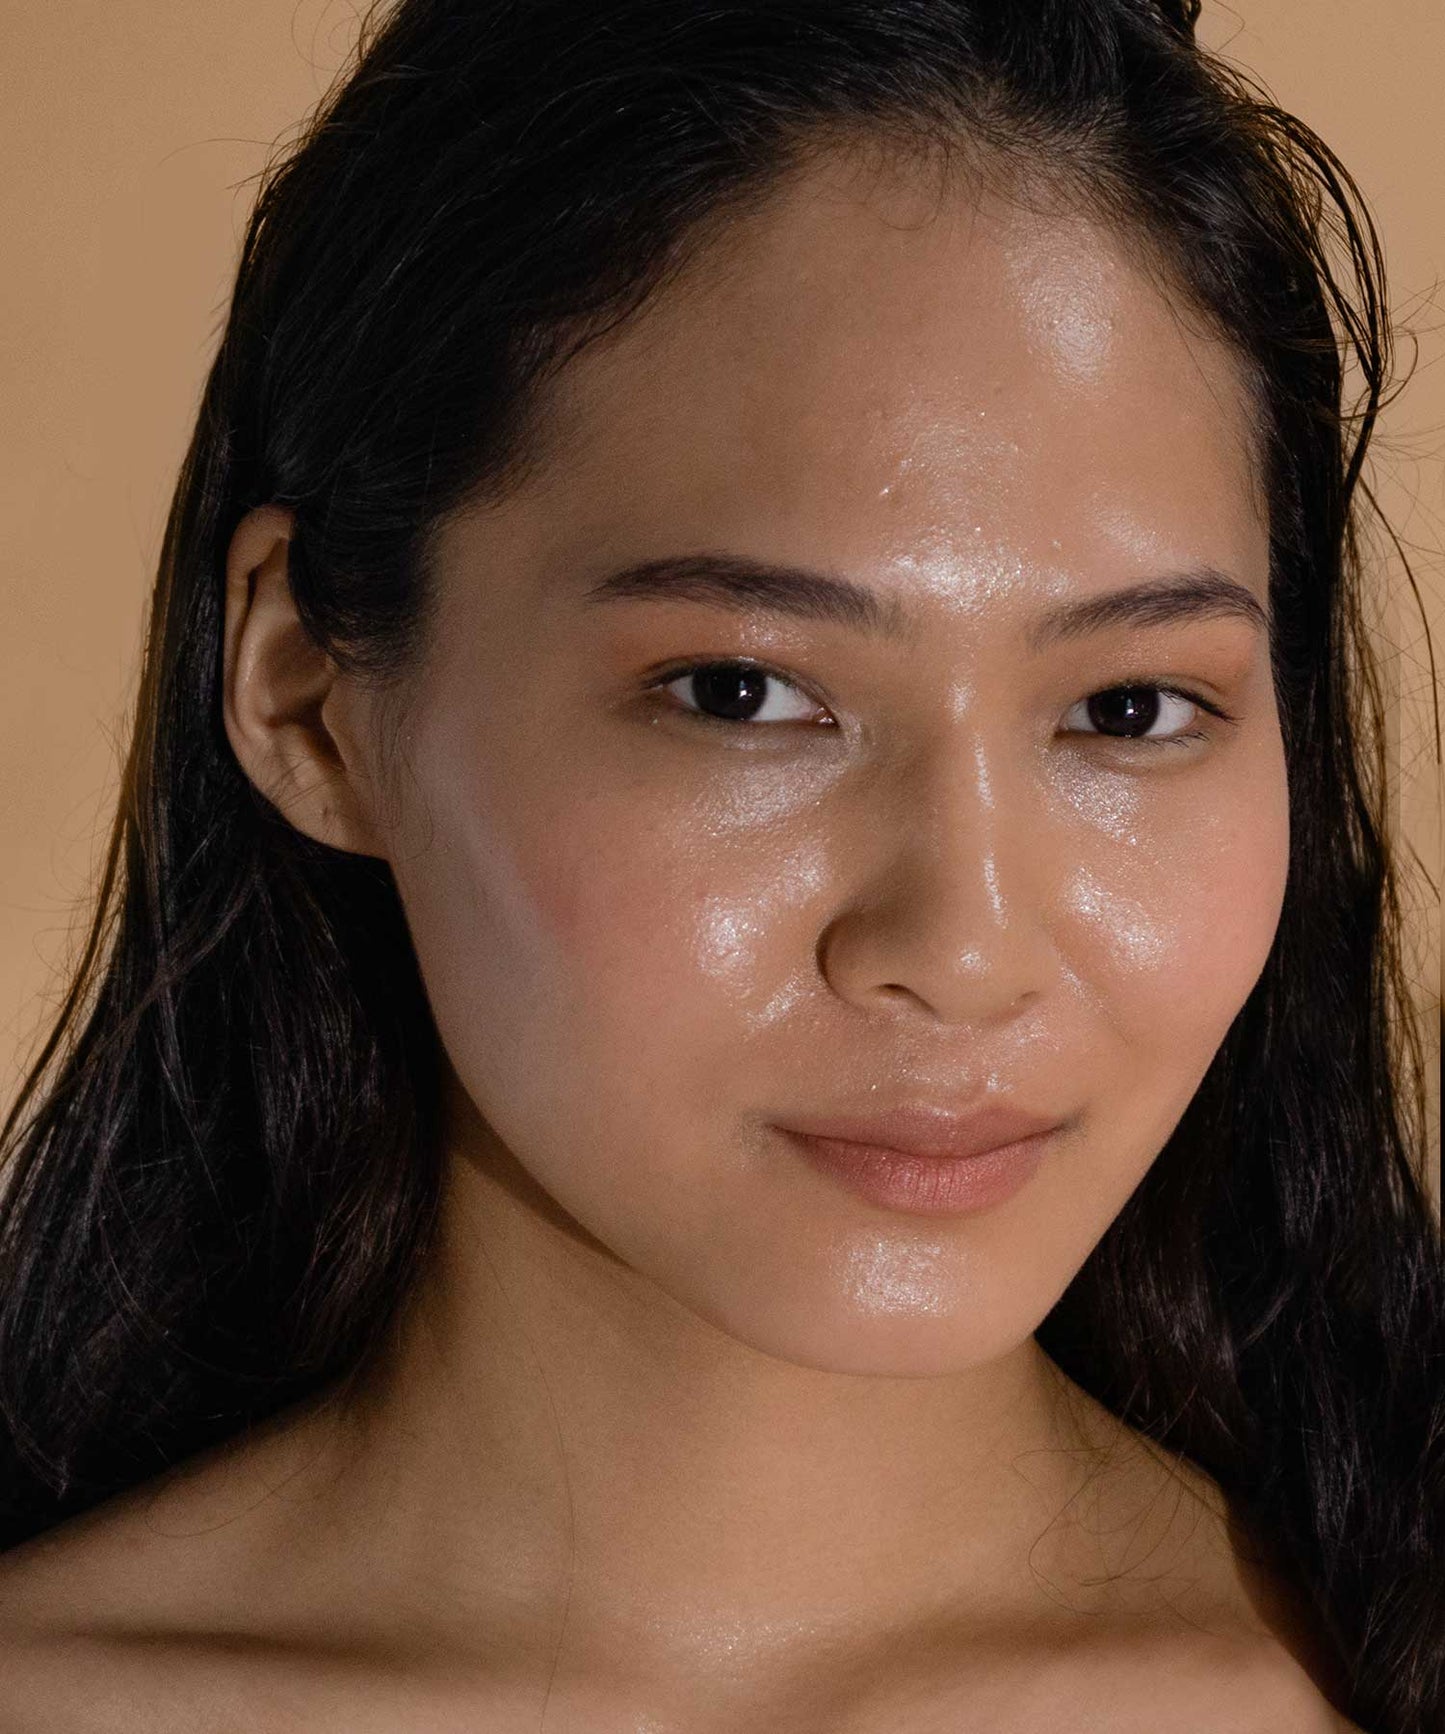 empyri - oil cleansing hemp face wash for acne prone skin_3